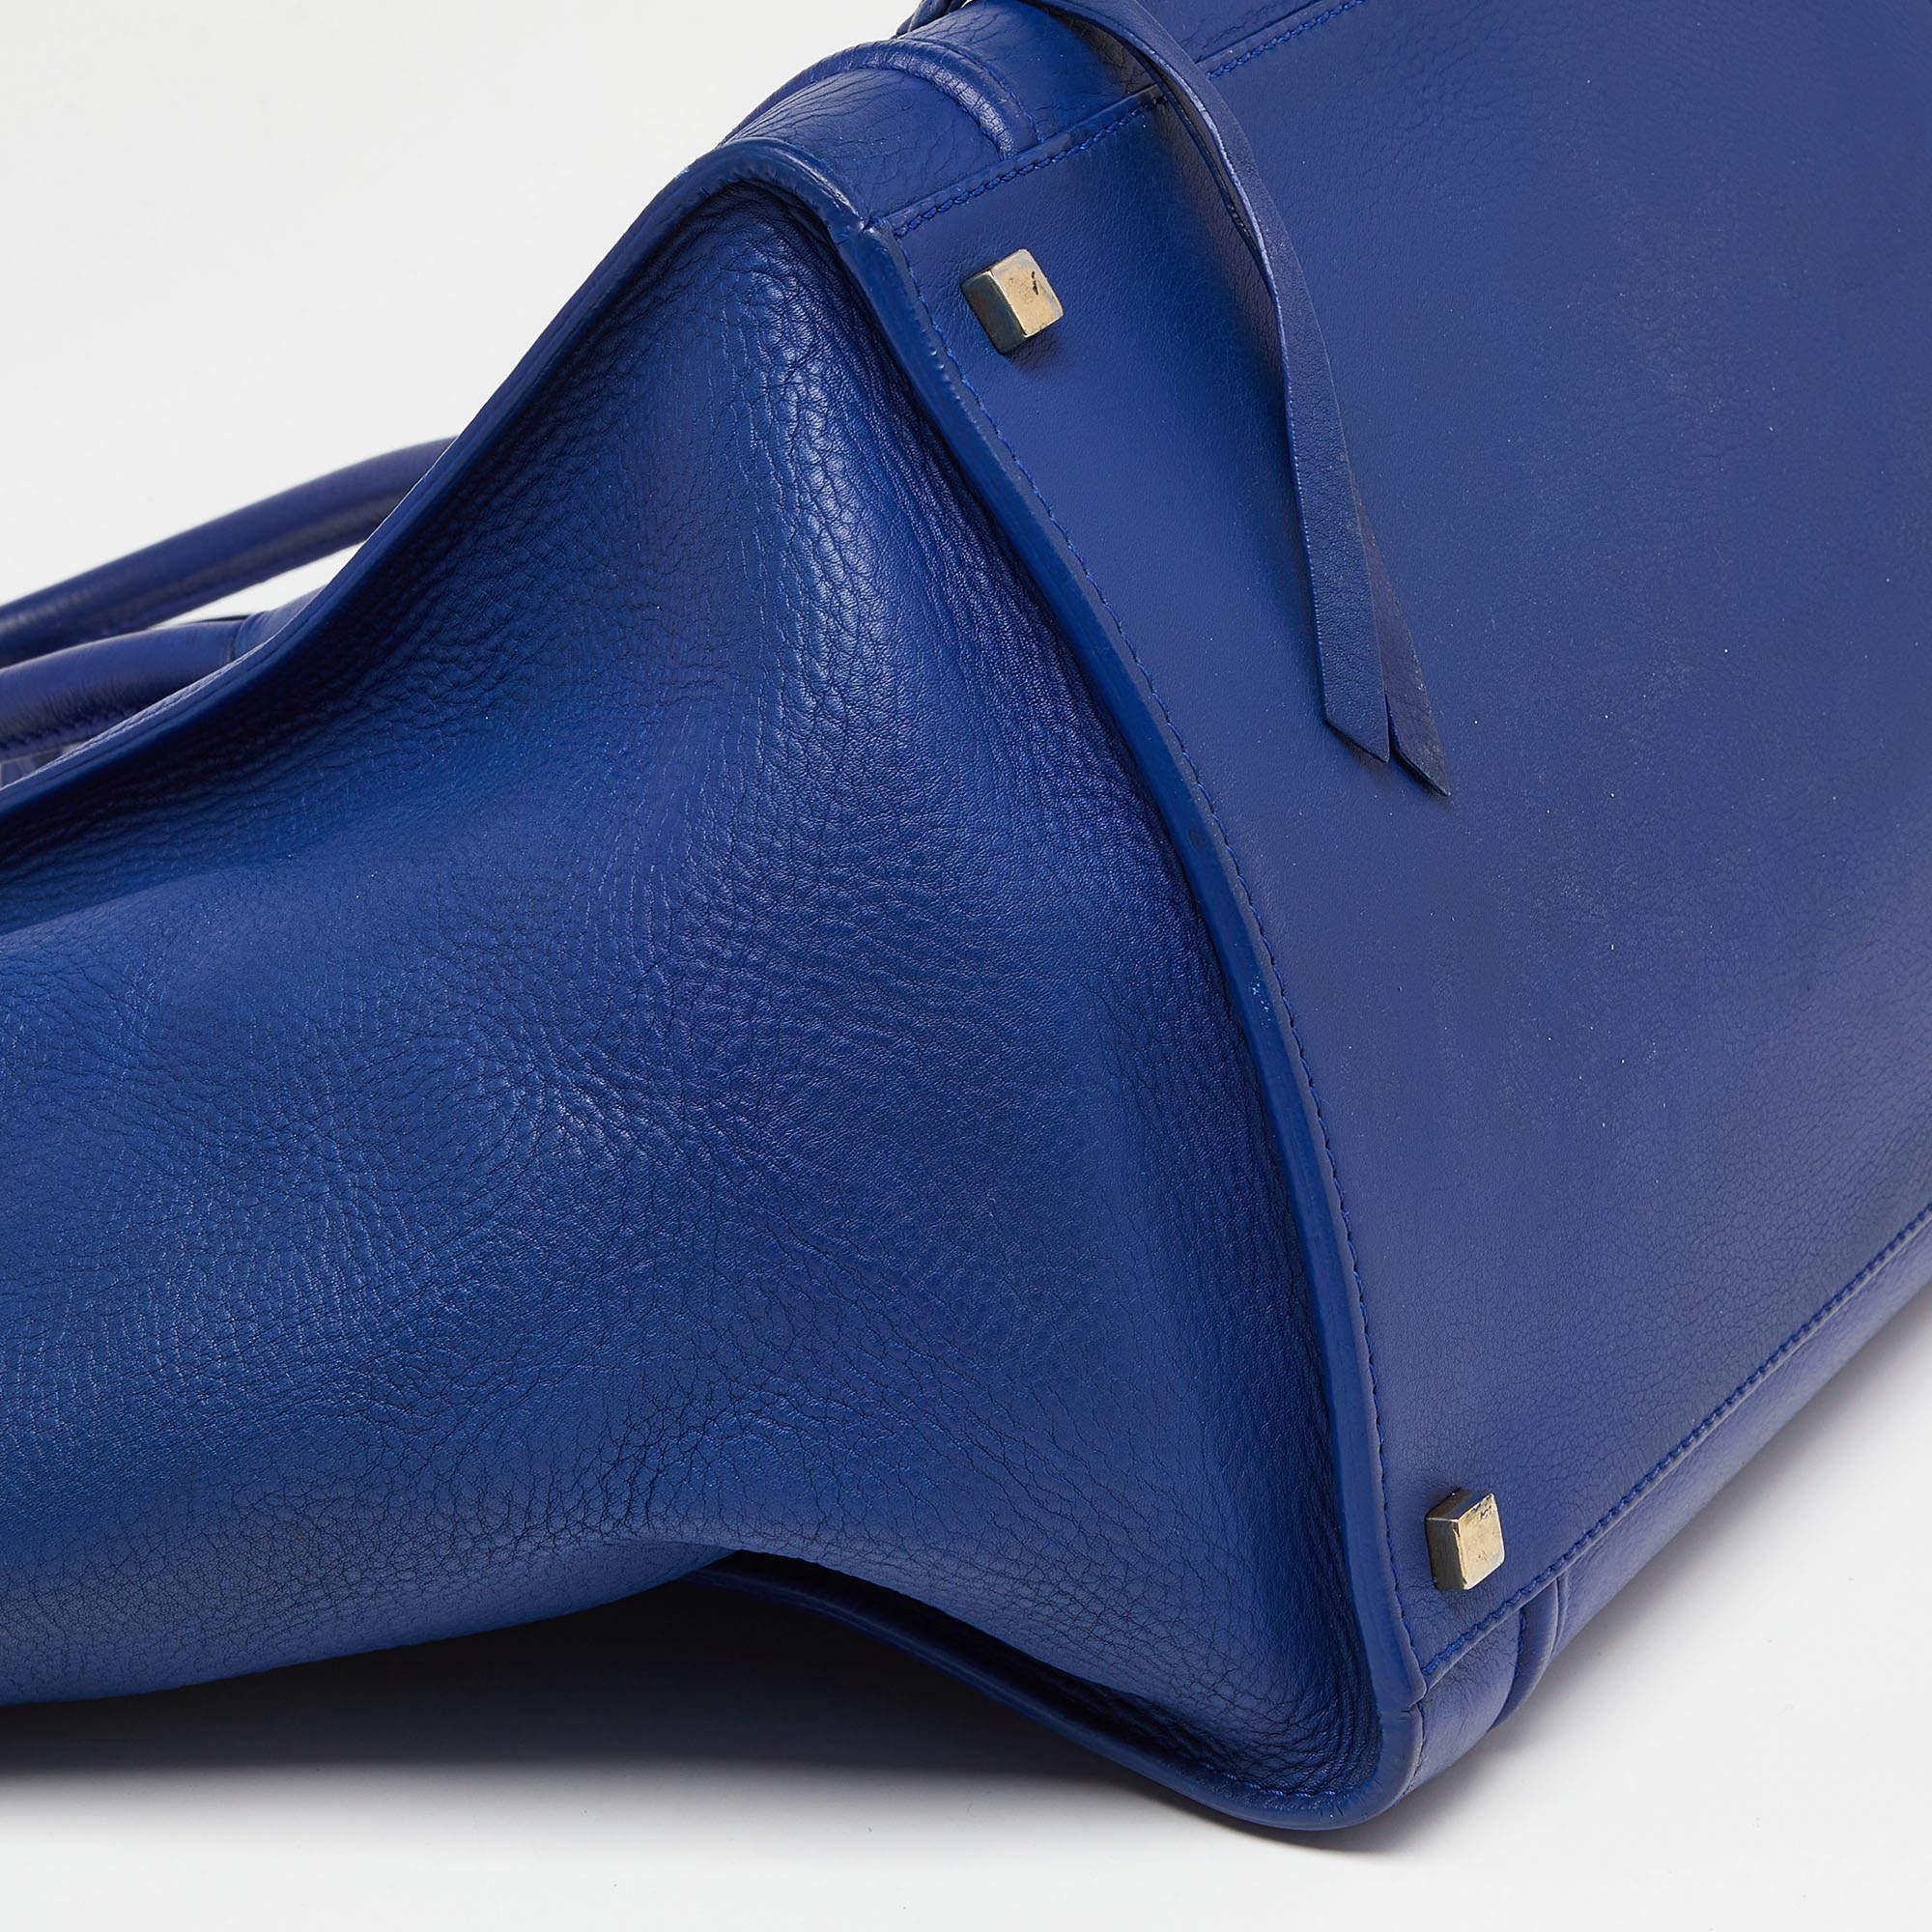 Celine Blue Leather Medium Phantom Luggage Tote 5